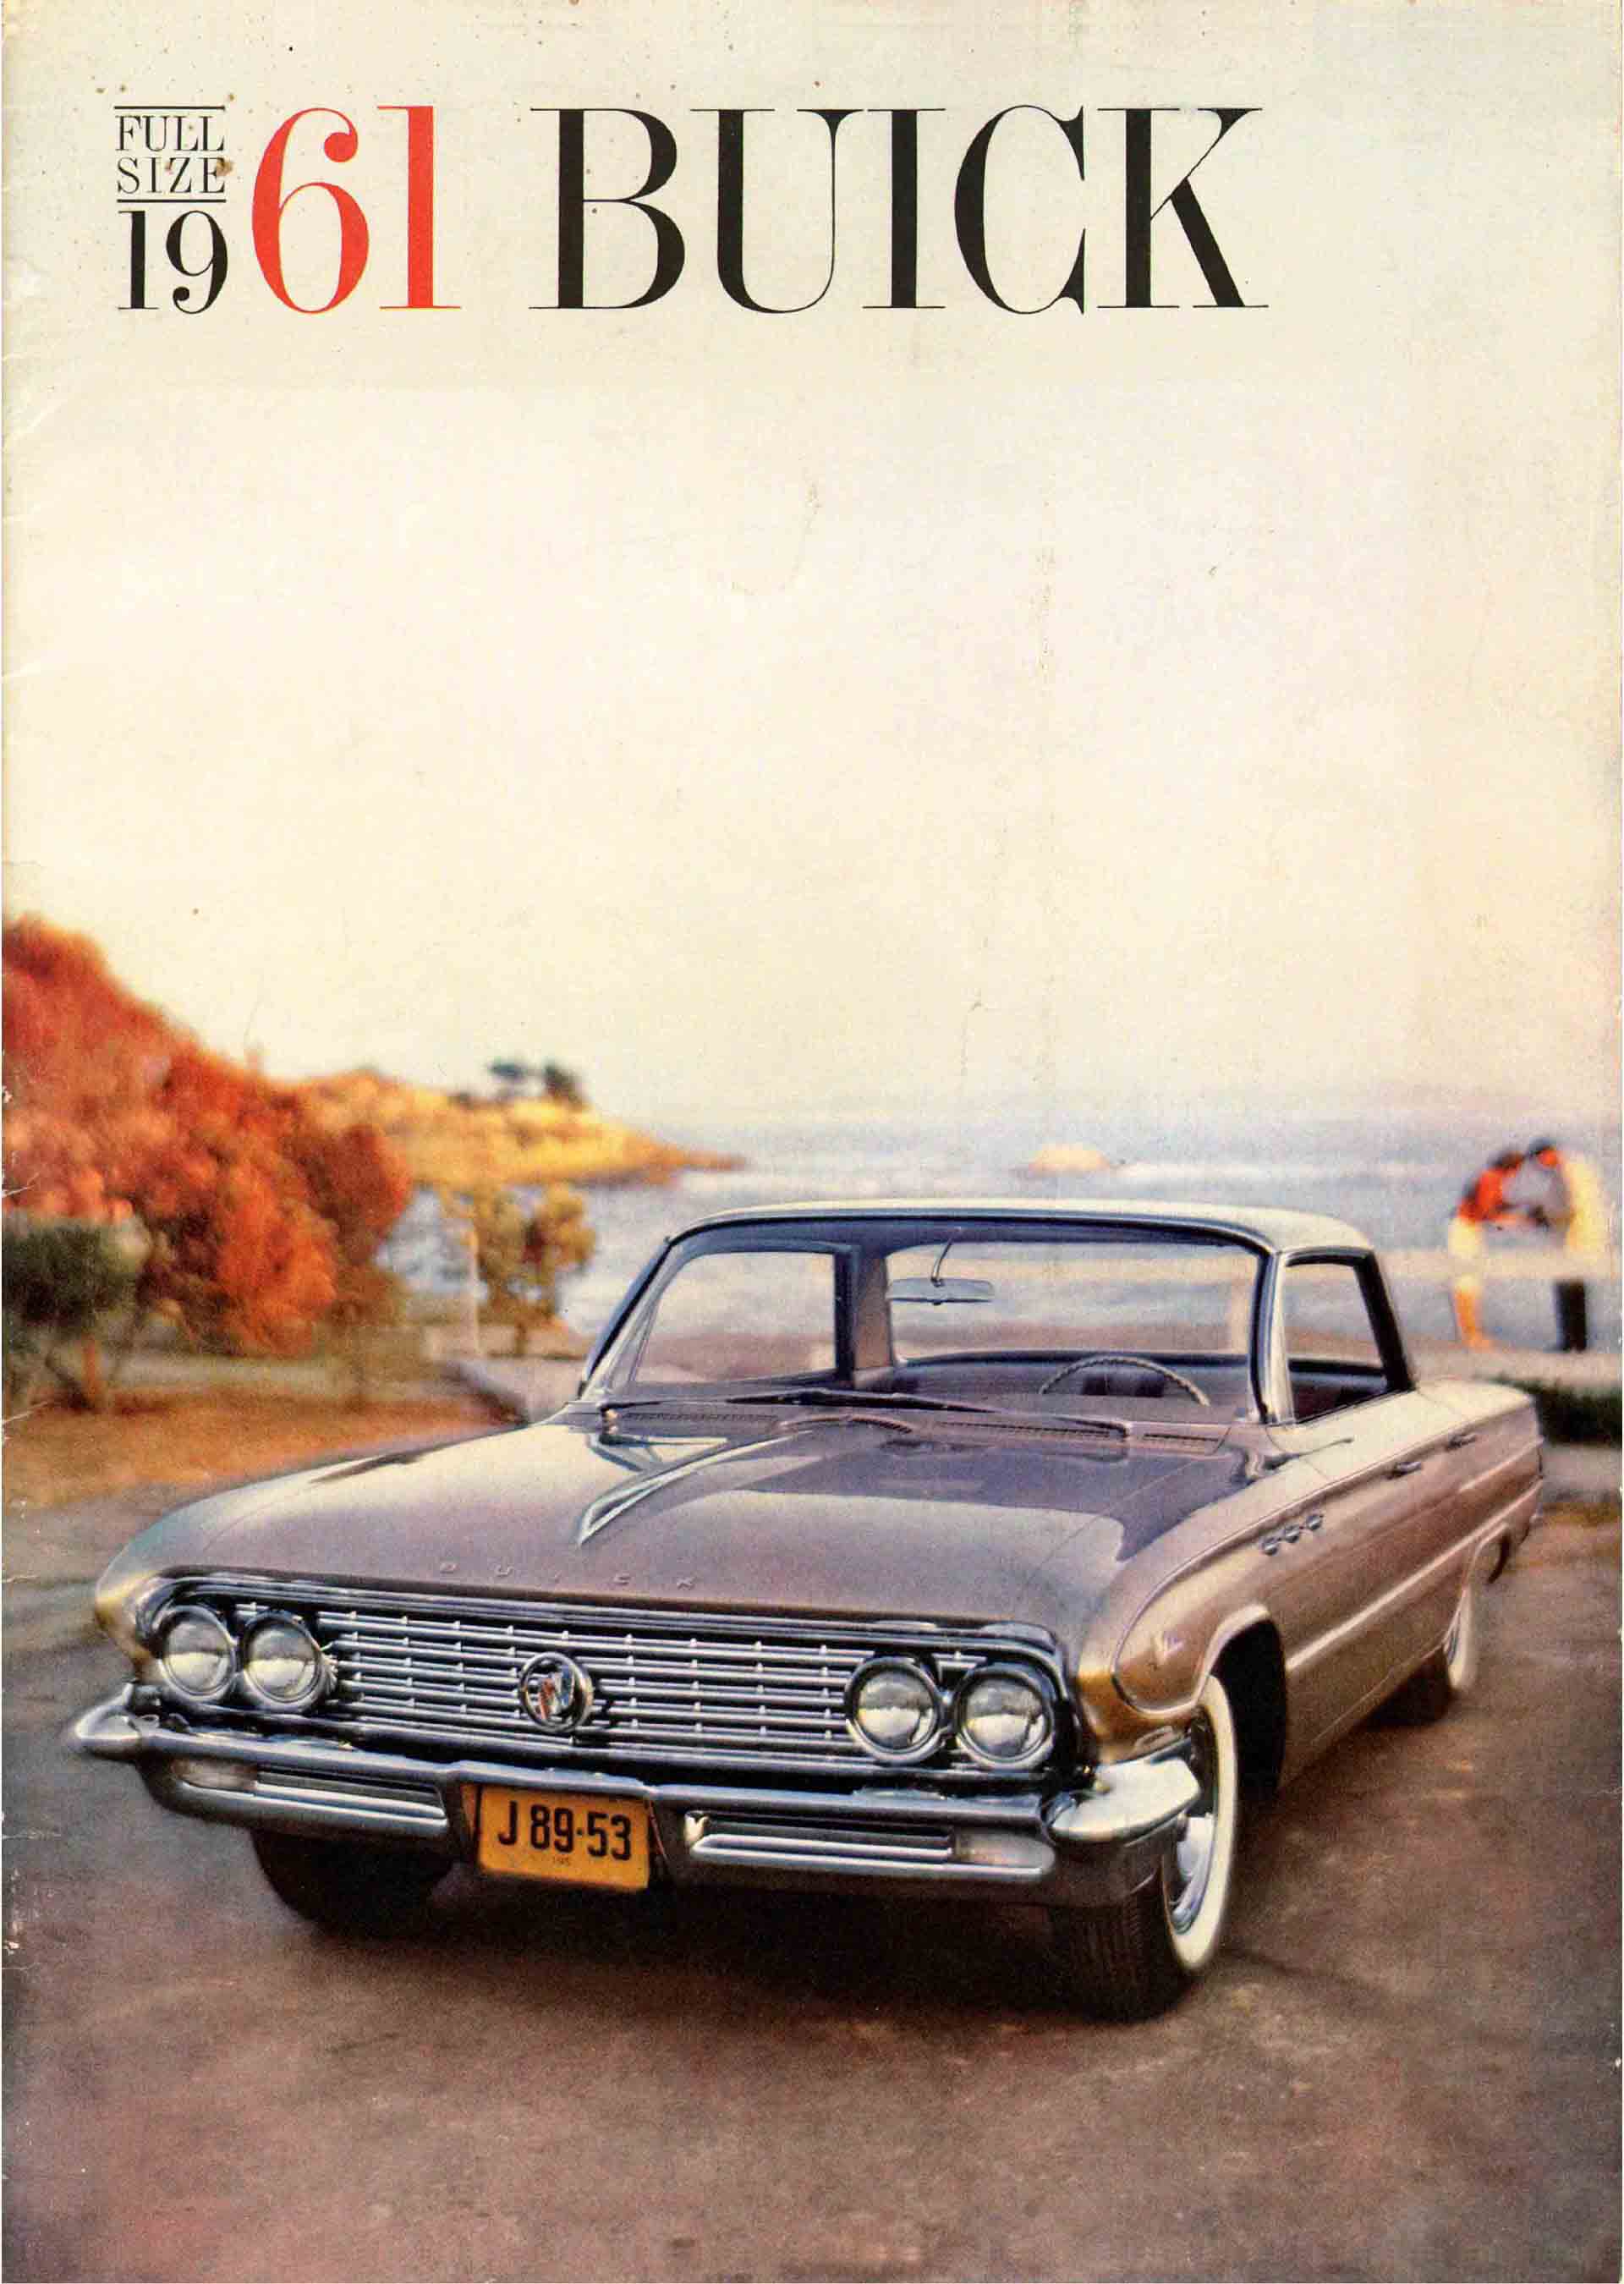 1961 Buick Full Size Prestige-01